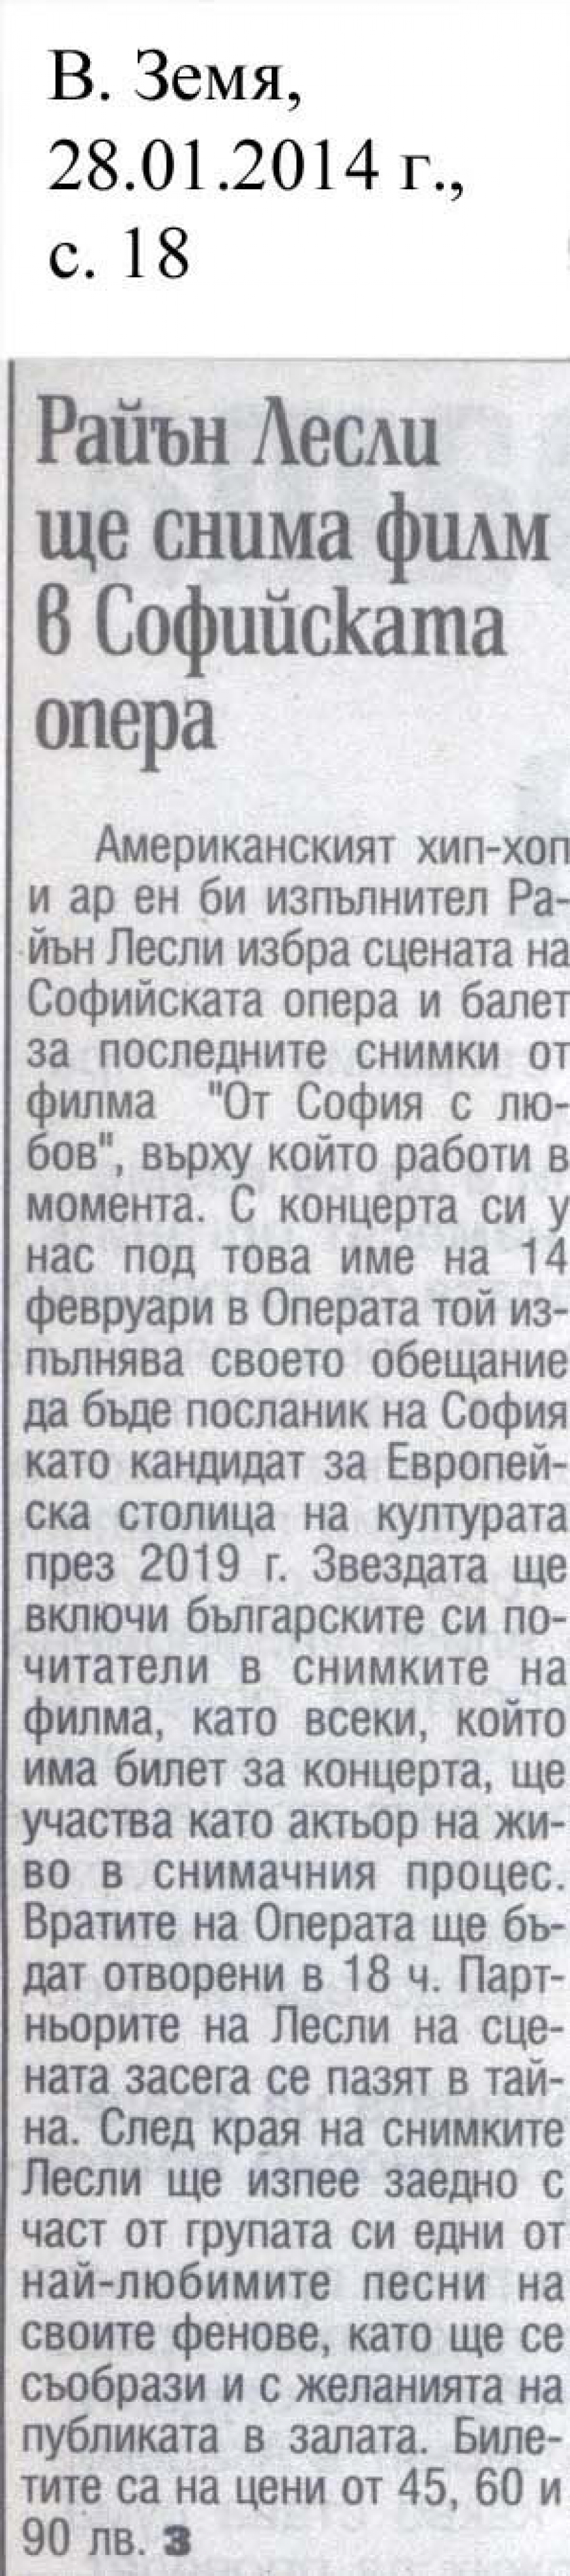 Райън Лесли ще снима филм в Софийската опера - в-к Земя - 28.01.2014